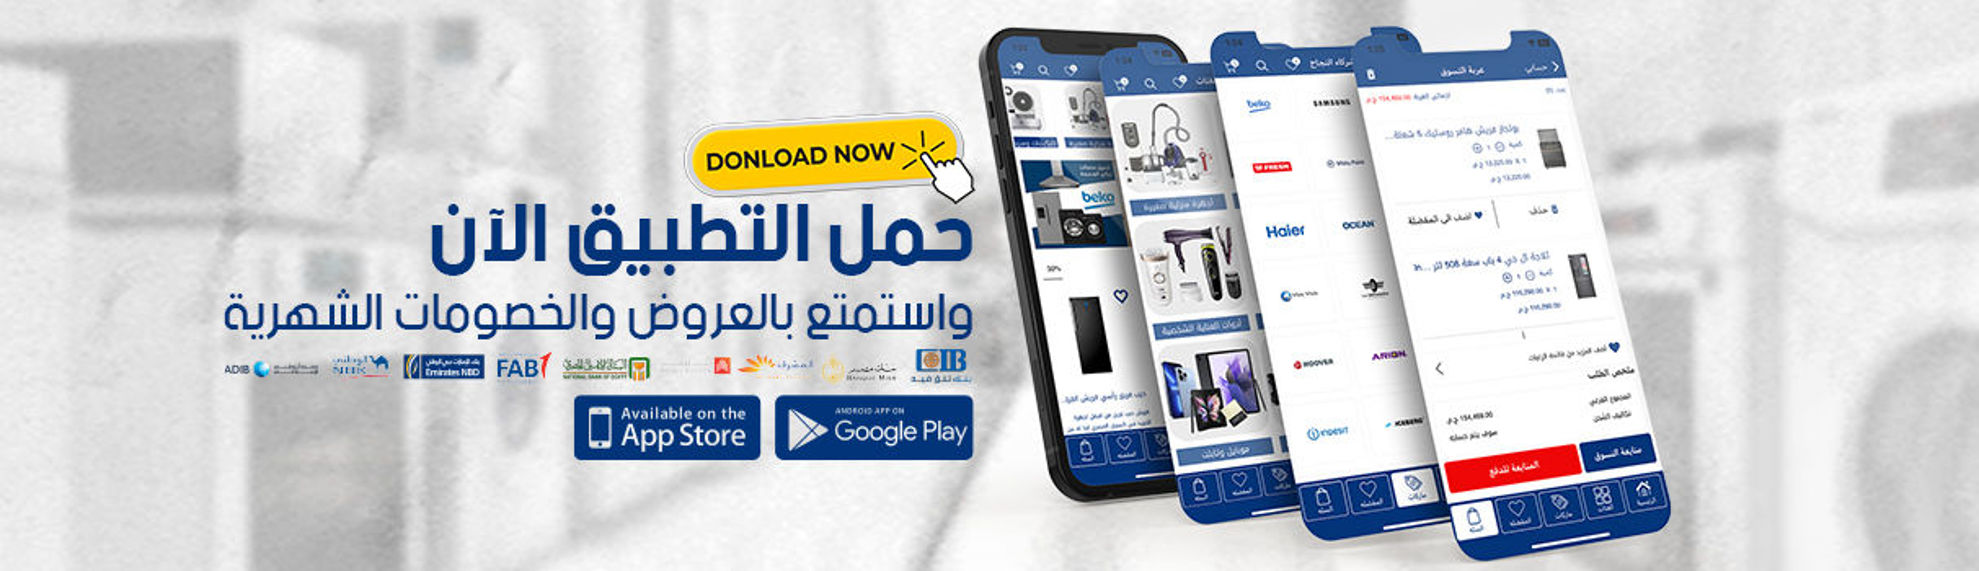 Eliraqi Store | Download App Now 